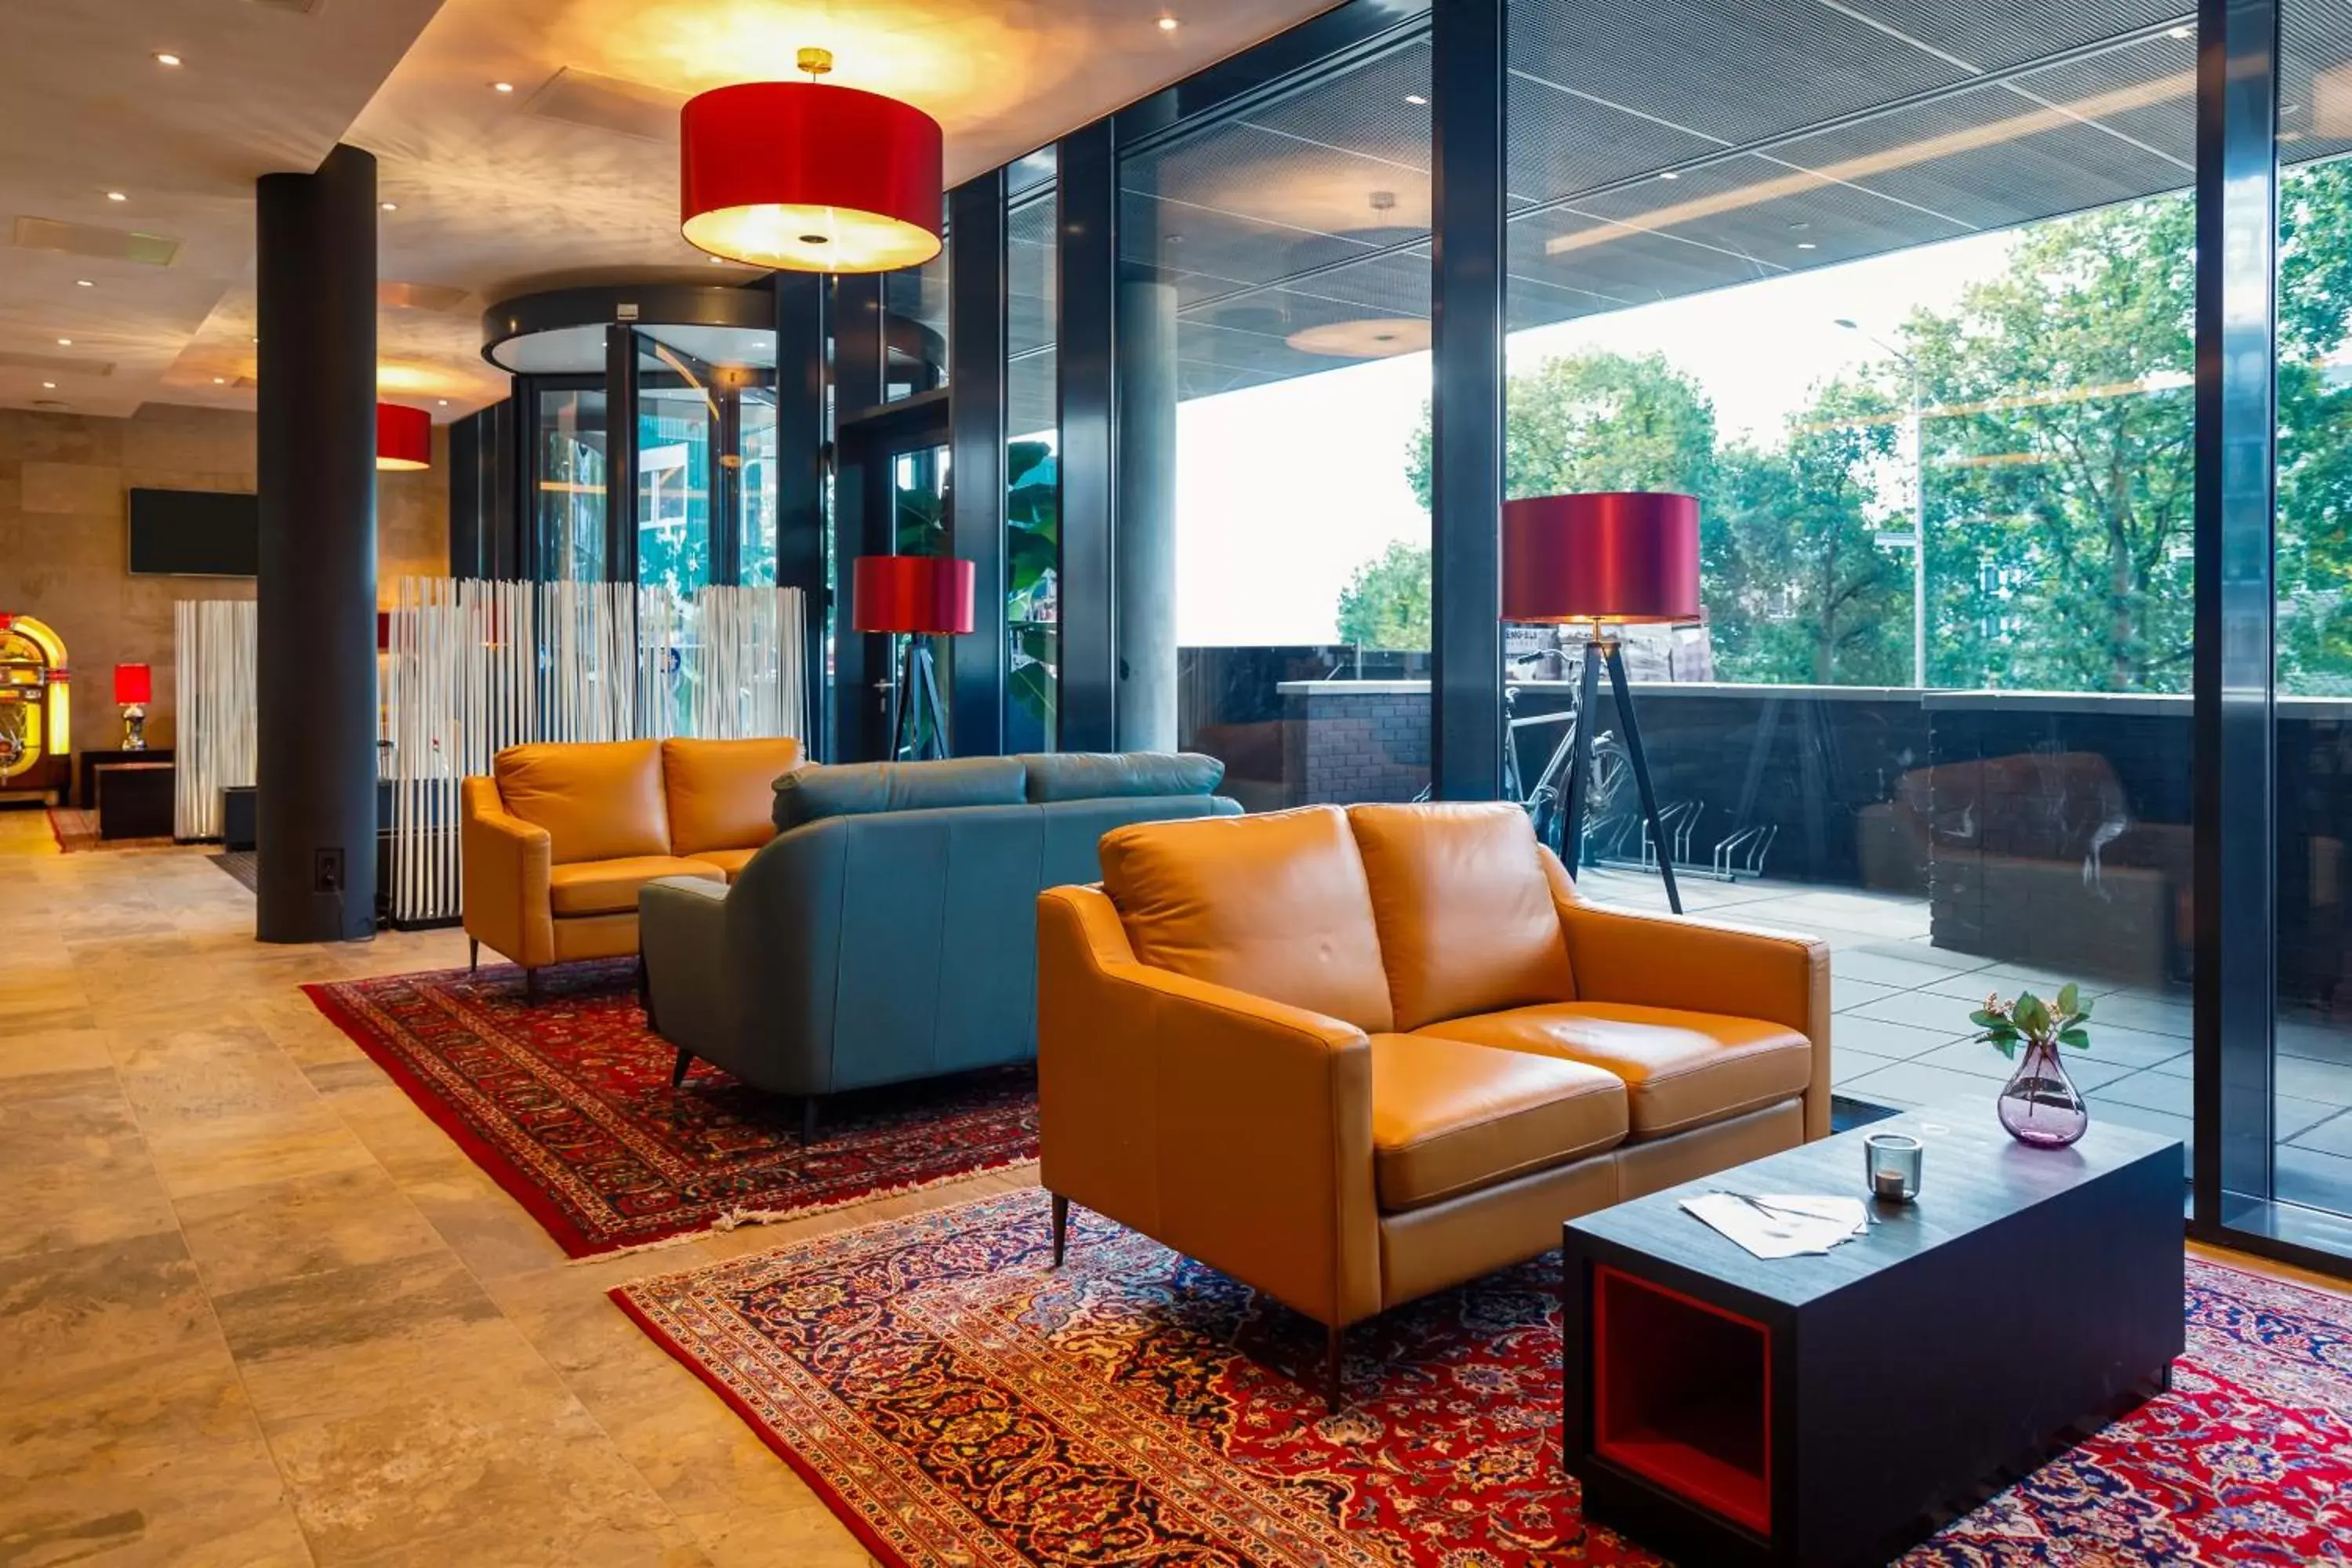 Lobby or reception, Lobby/Reception in Bastion Hotel Nijmegen